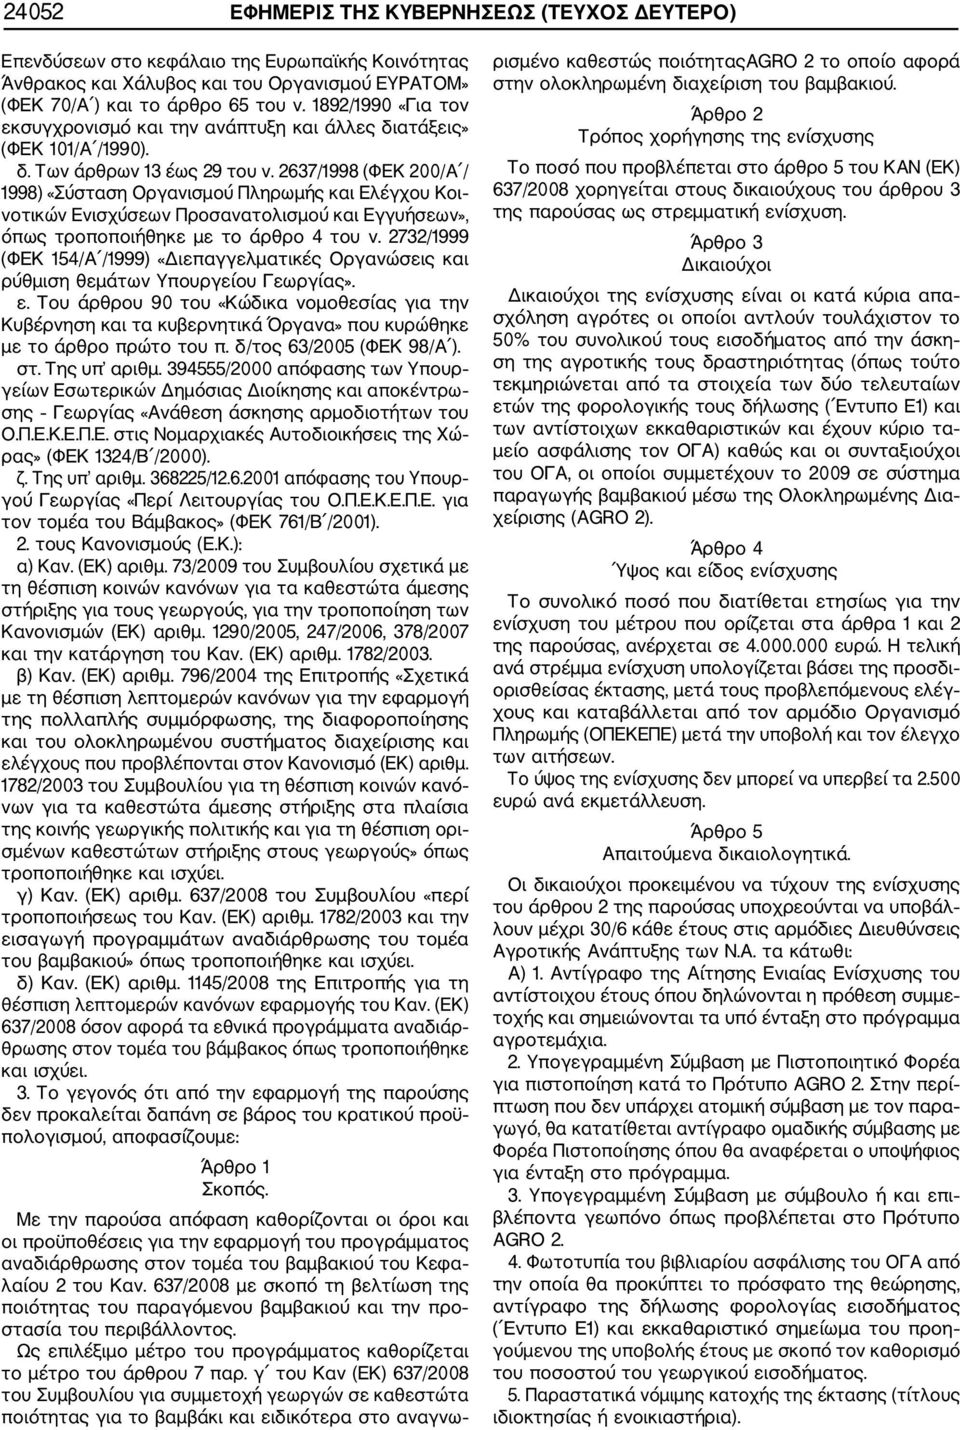 2637/1998 (ΦΕΚ 200/Α / 1998) «Σύσταση Οργανισμού Πληρωμής και Ελέγχου Κοι νοτικών Ενισχύσεων Προσανατολισμού και Εγγυήσεων», όπως τροποποιήθηκε με το άρθρο 4 του ν.